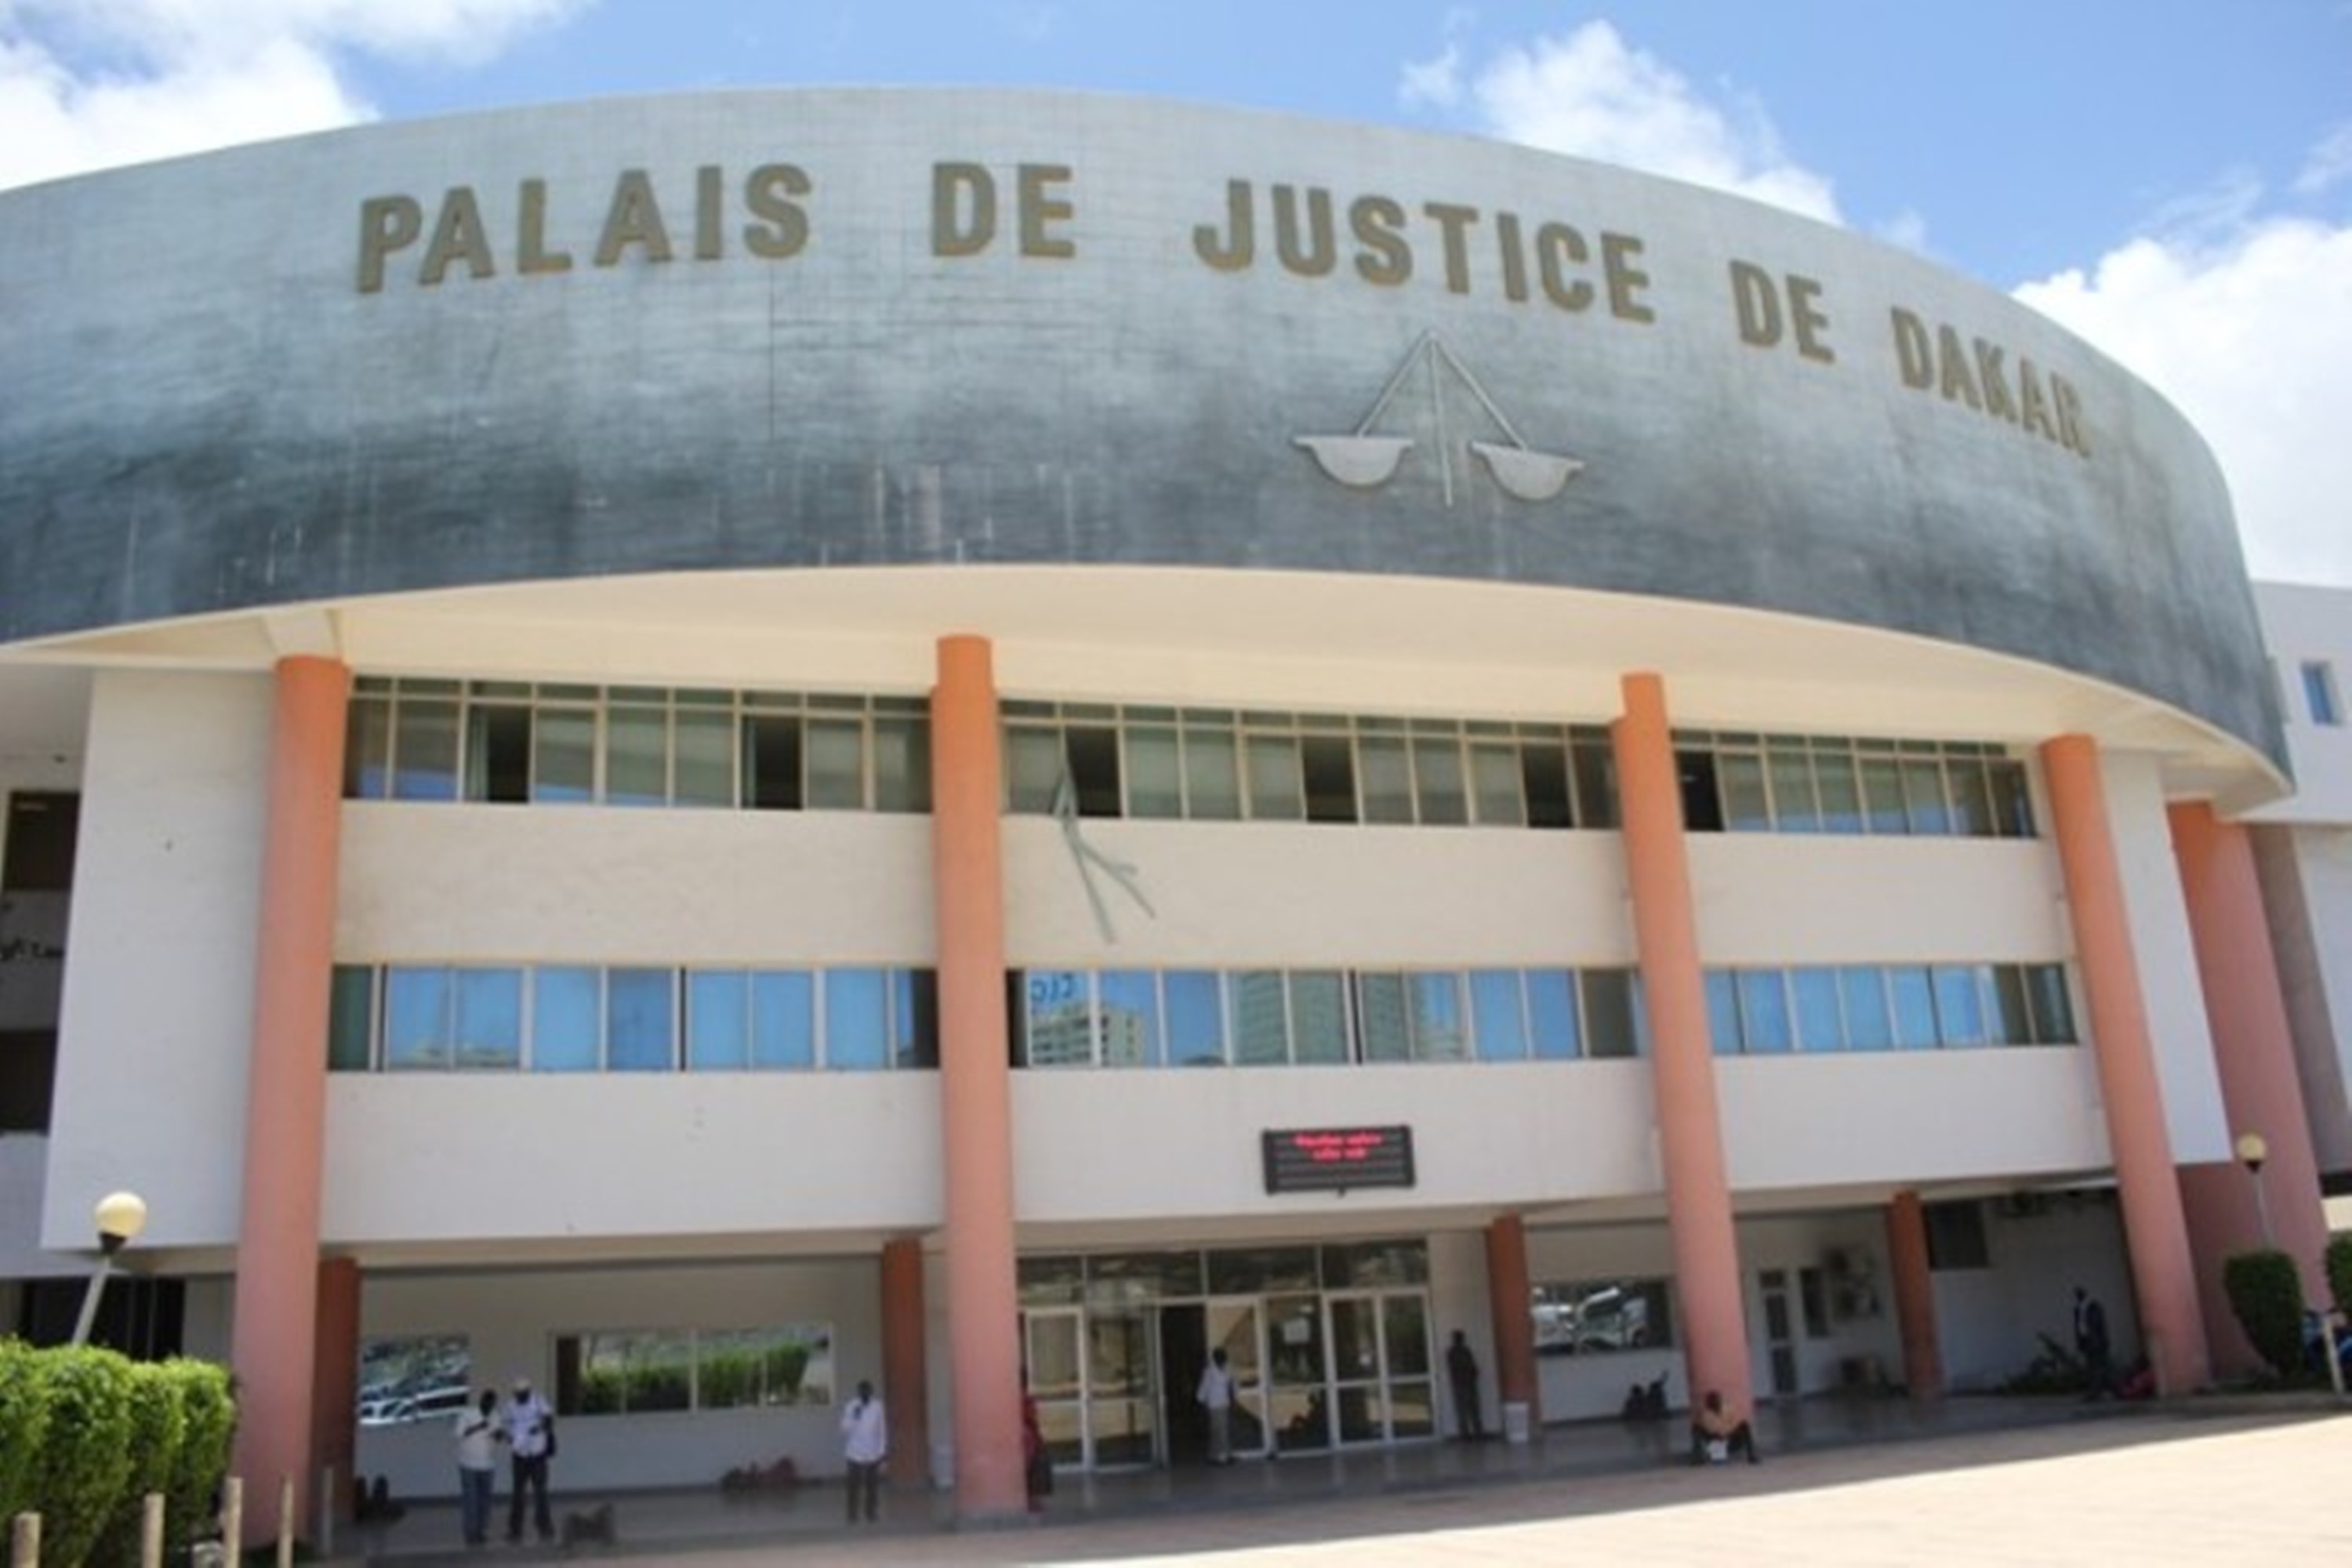 SCANDALE DE LA COURS D'APPEL: les chages retenues contre Amadou Lamine Diagne et ses 7 complices présumés